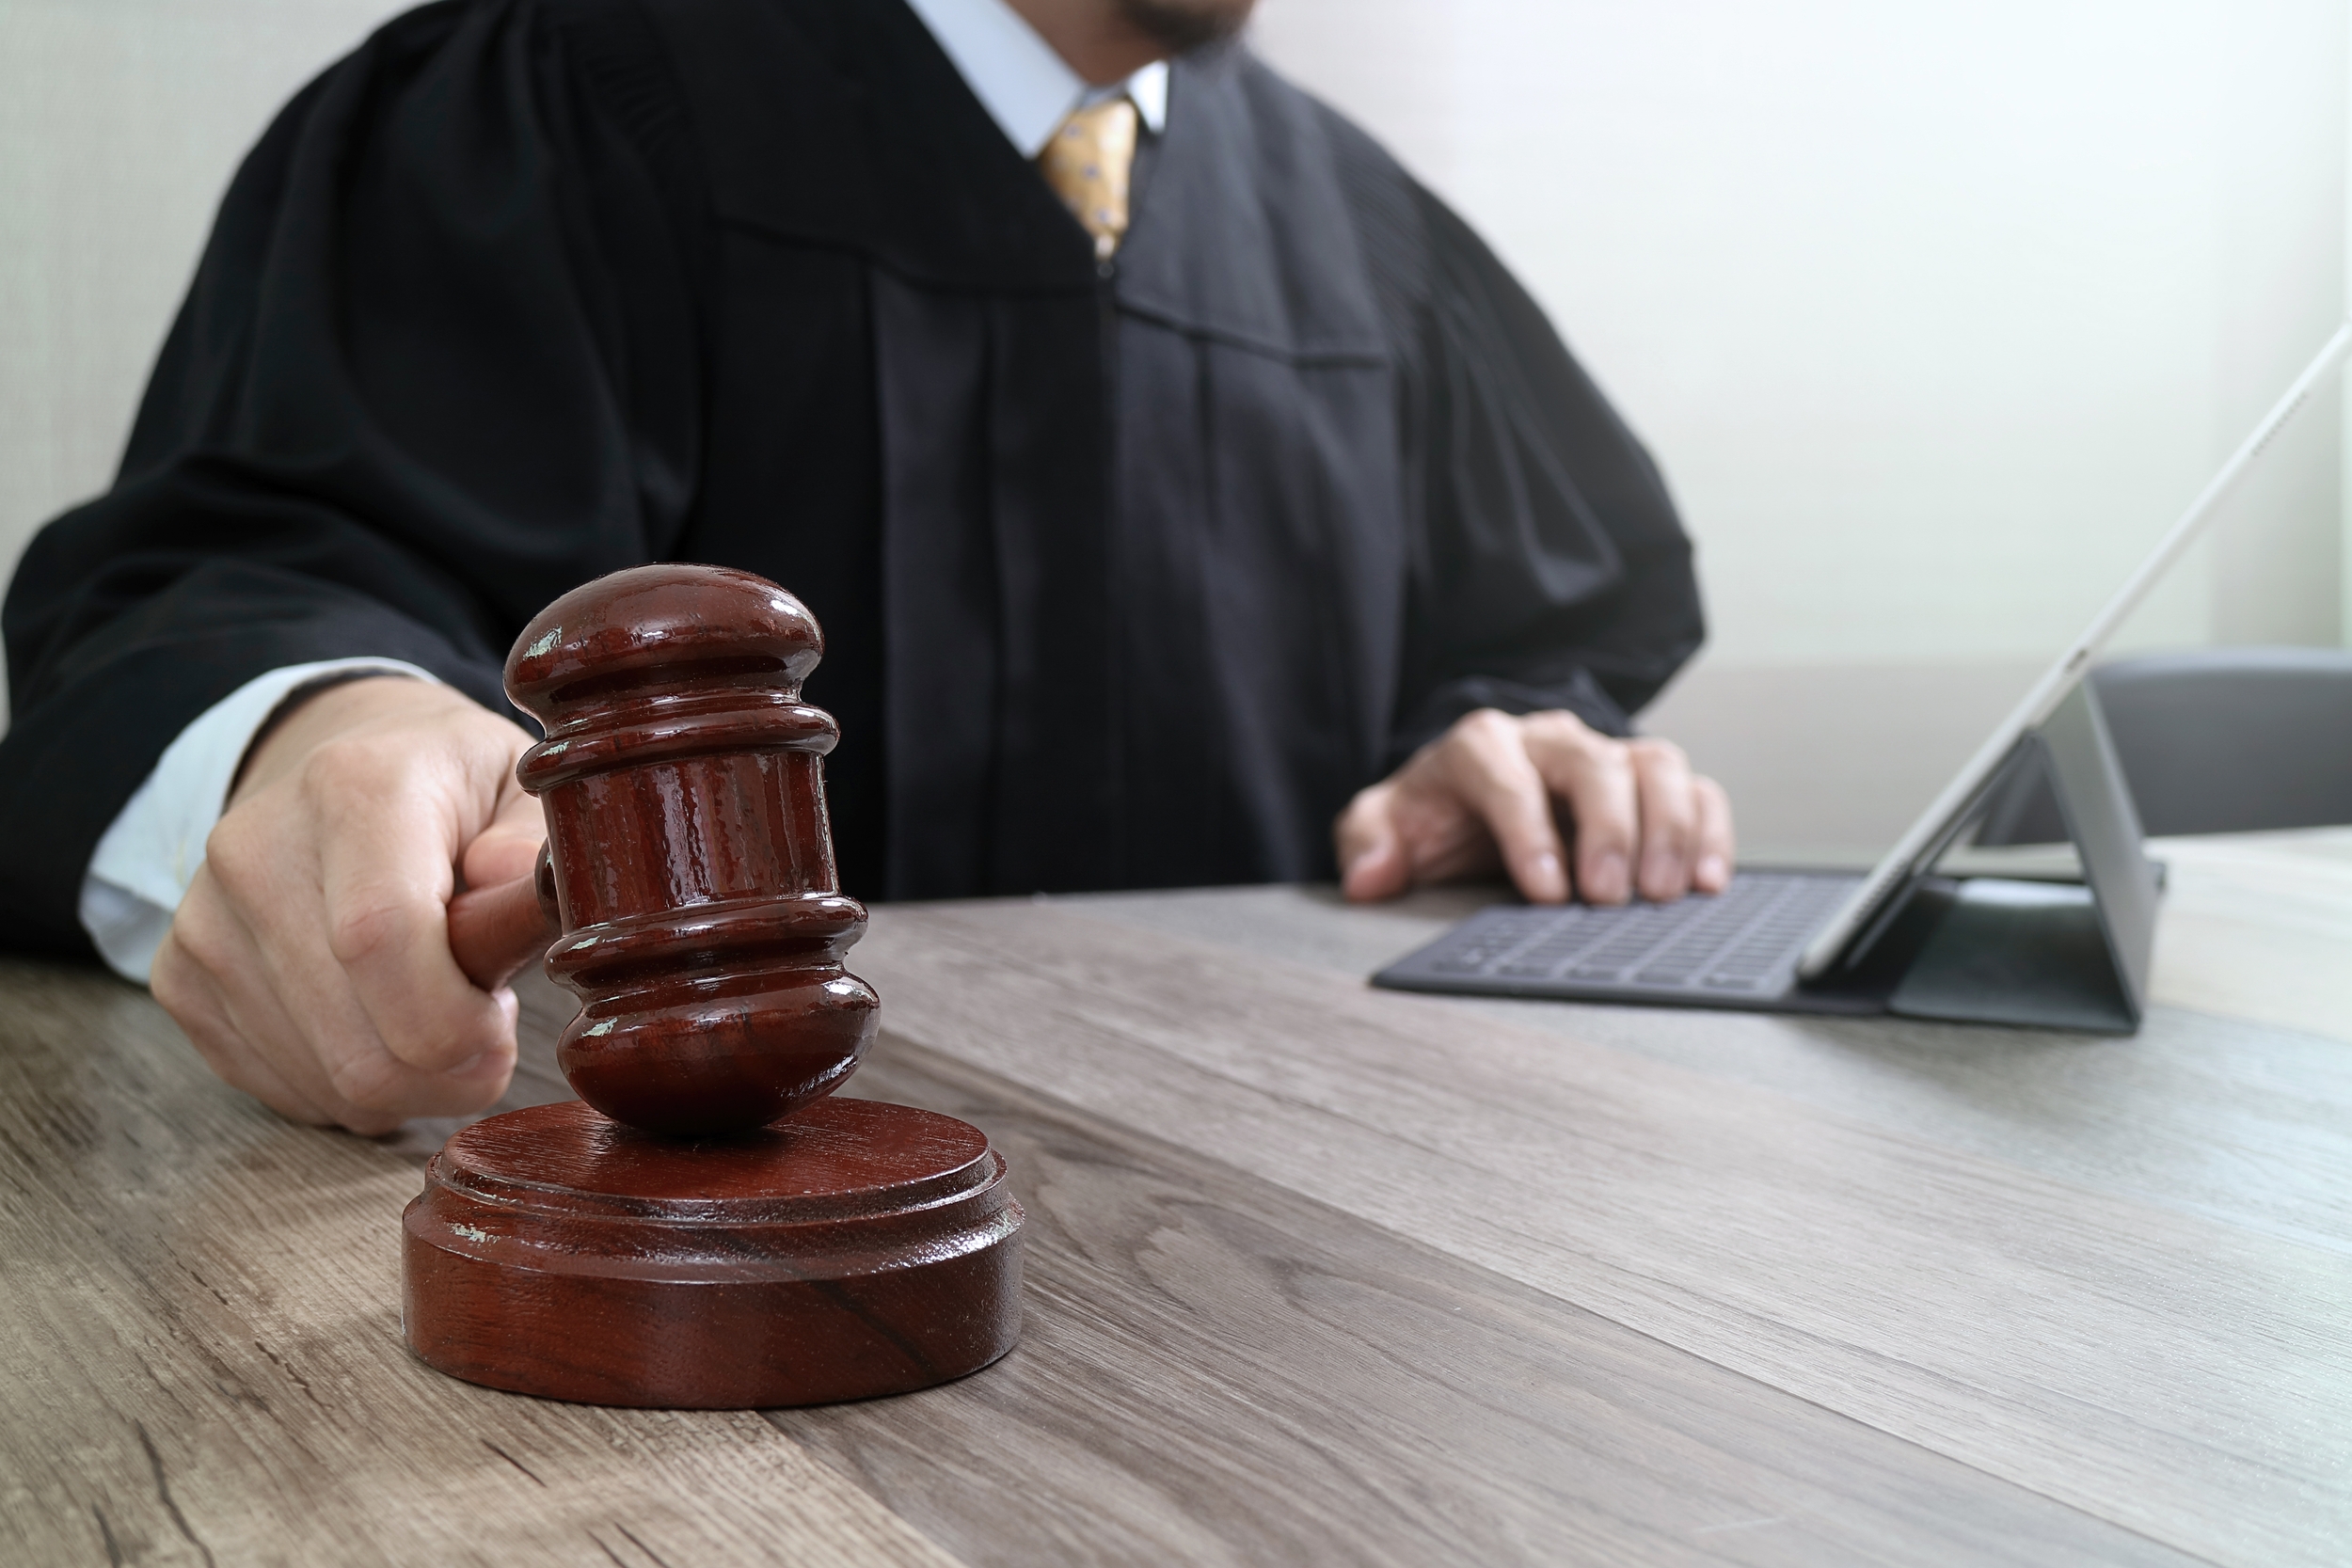 Une application capable de jouer aux avocats grâce à l'intelligence artificielle s'attire les foudres des professionnels du droit